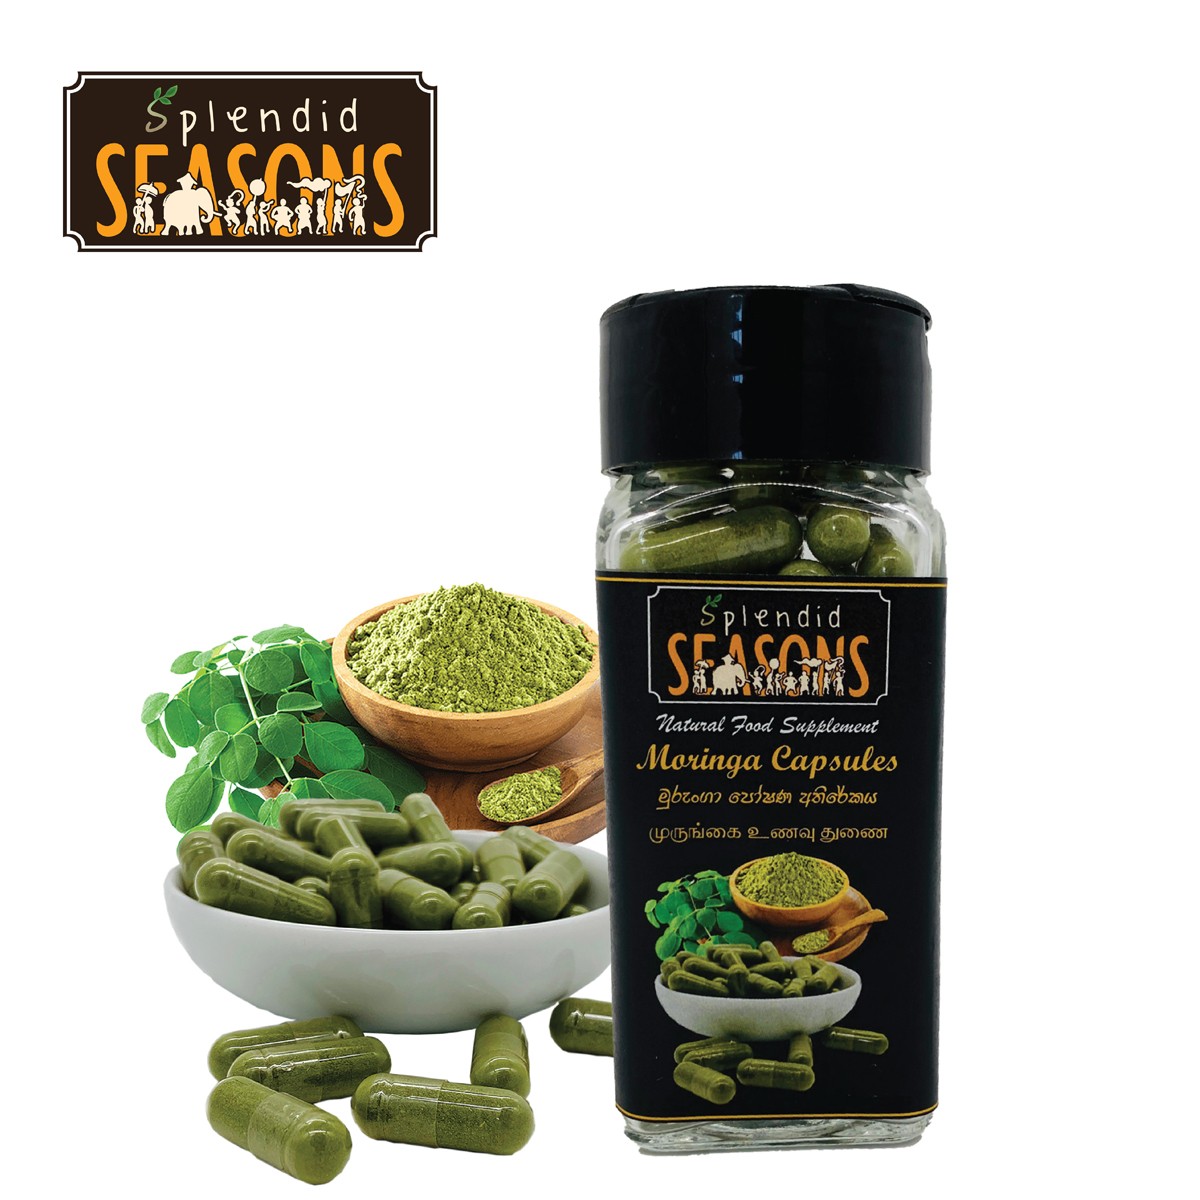 Moringa Capsules - Natural Food Supplement - 60 pcs.